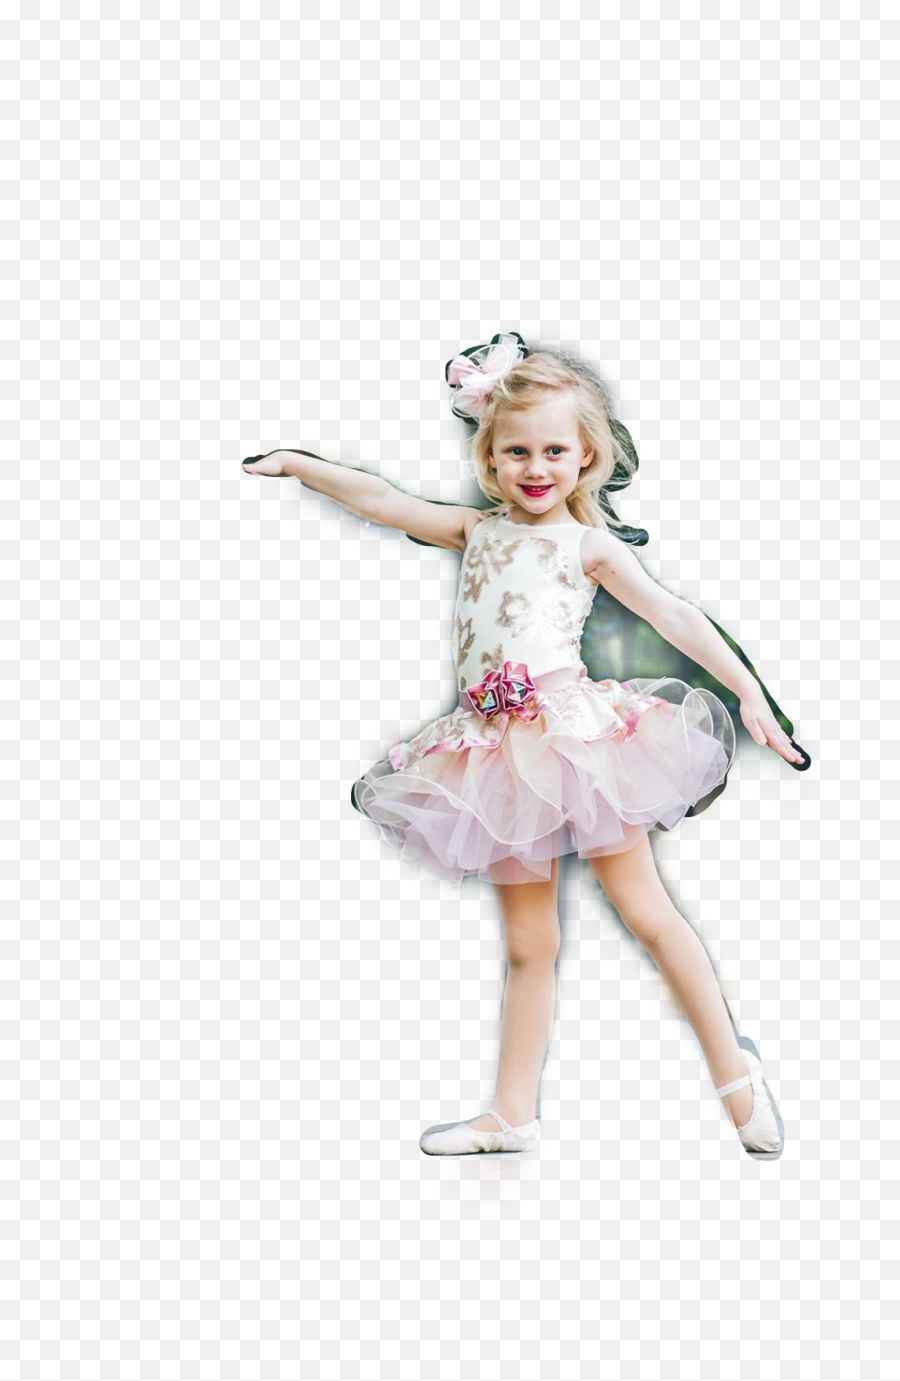 Dance Beauty Smile Girl Ballerina Freetoedit - Girl Emoji,Dancing Girl Emoji Costume